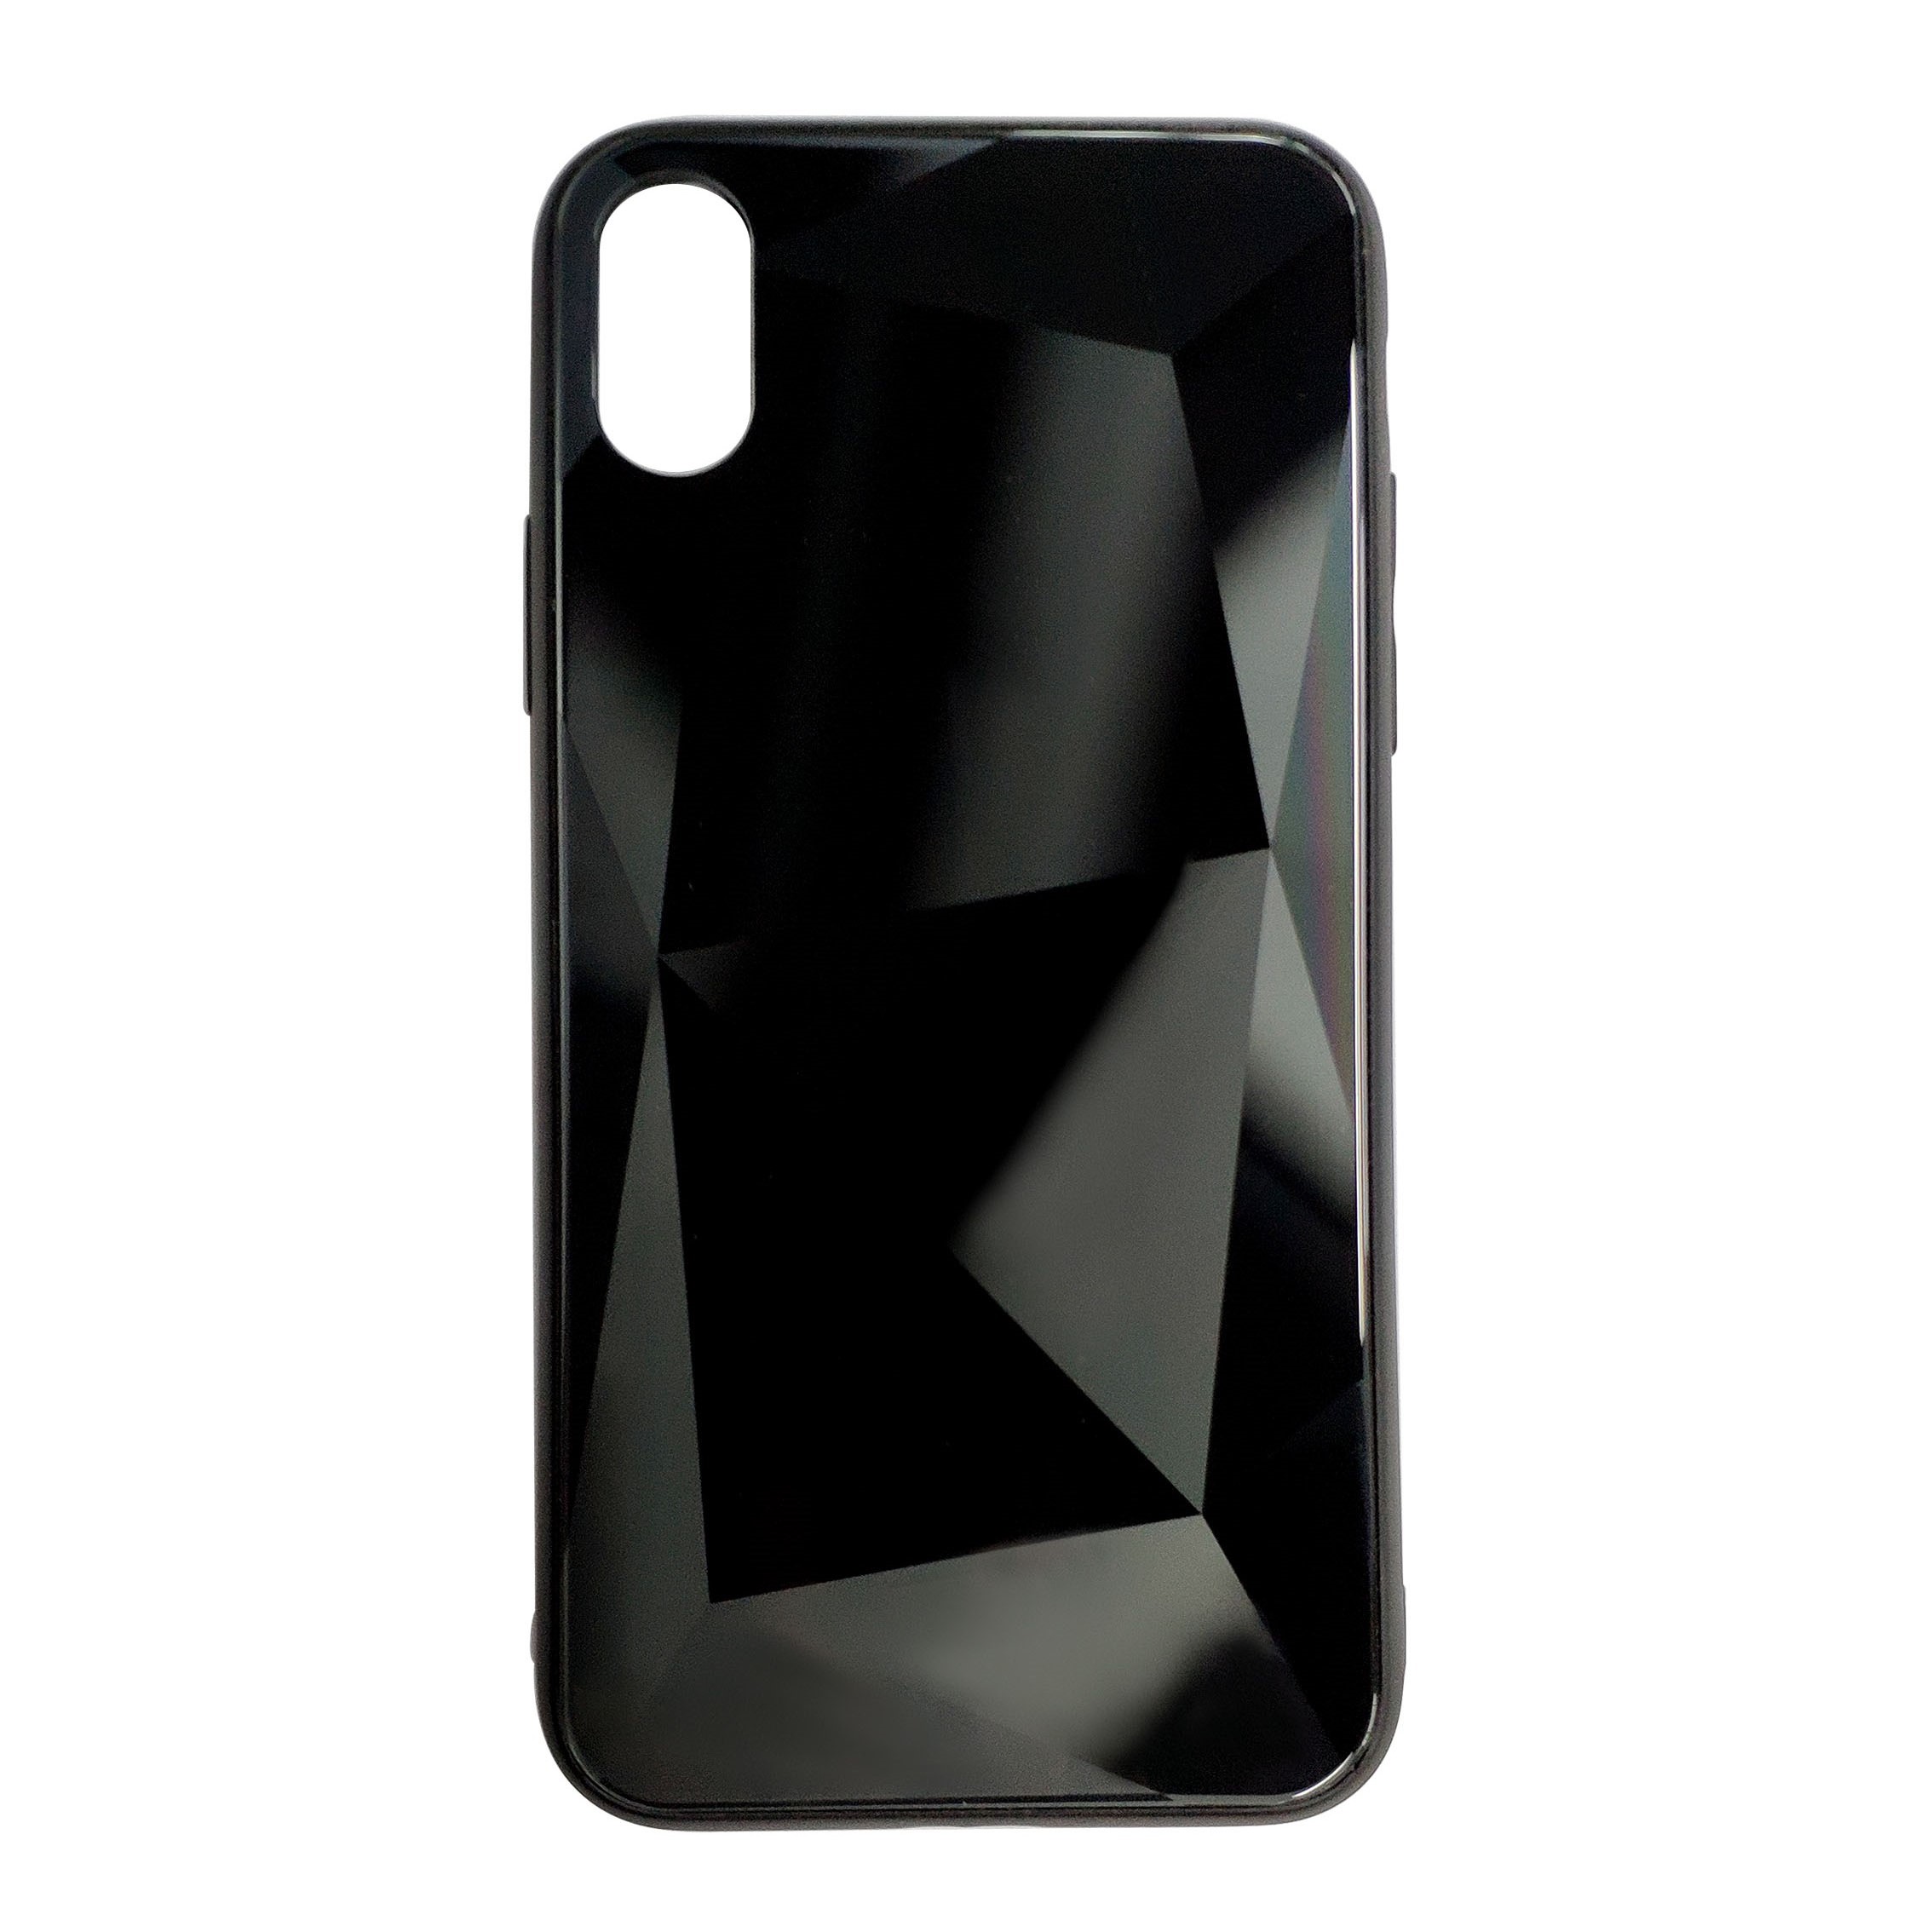 آنباکس کاور طرح الماسی مدل GA224 مناسب برای گوشی موبایل اپل iPhone XS Max توسط سحر صمیمی در تاریخ ۰۹ اسفند ۱۳۹۹